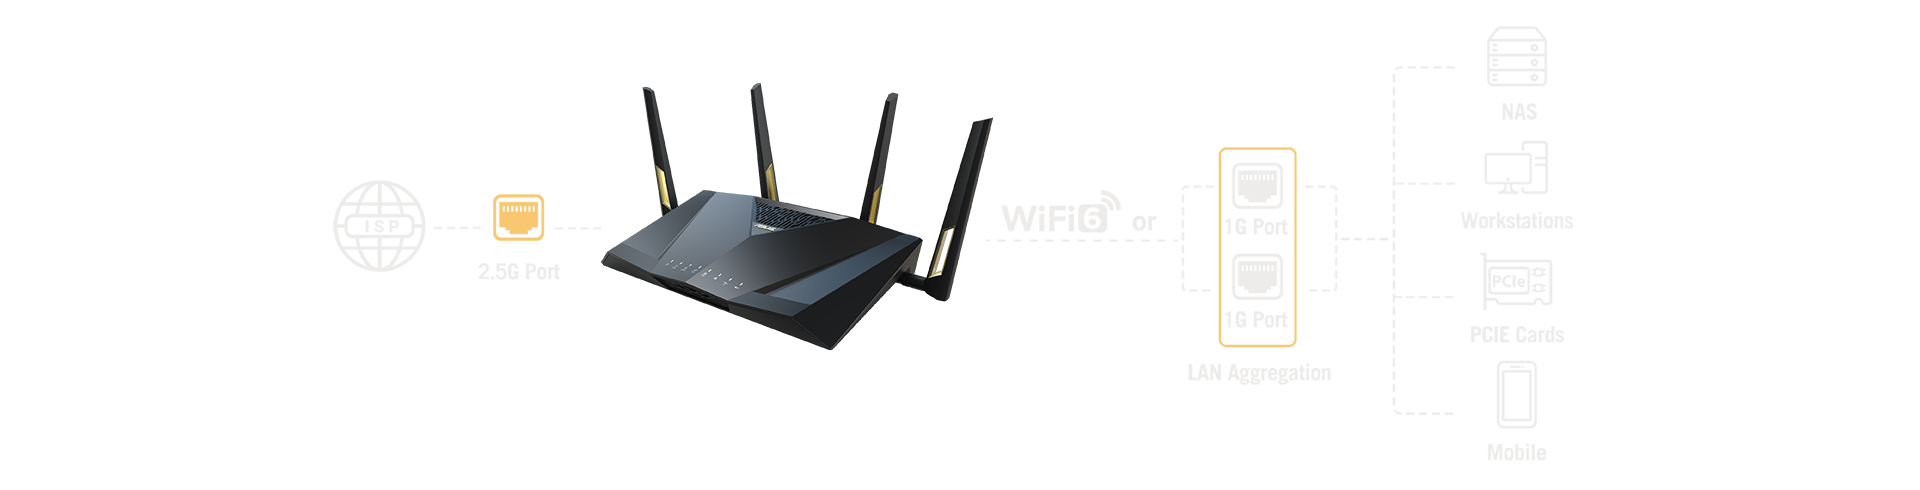 Grâce à l'agrégation LAN, vous pouvez relier deux ports LAN 1 Gbit/s pour créer une connexion LAN 2 Gbit/s, ce qui est idéal pour fournir une bande passante supplémentaire.